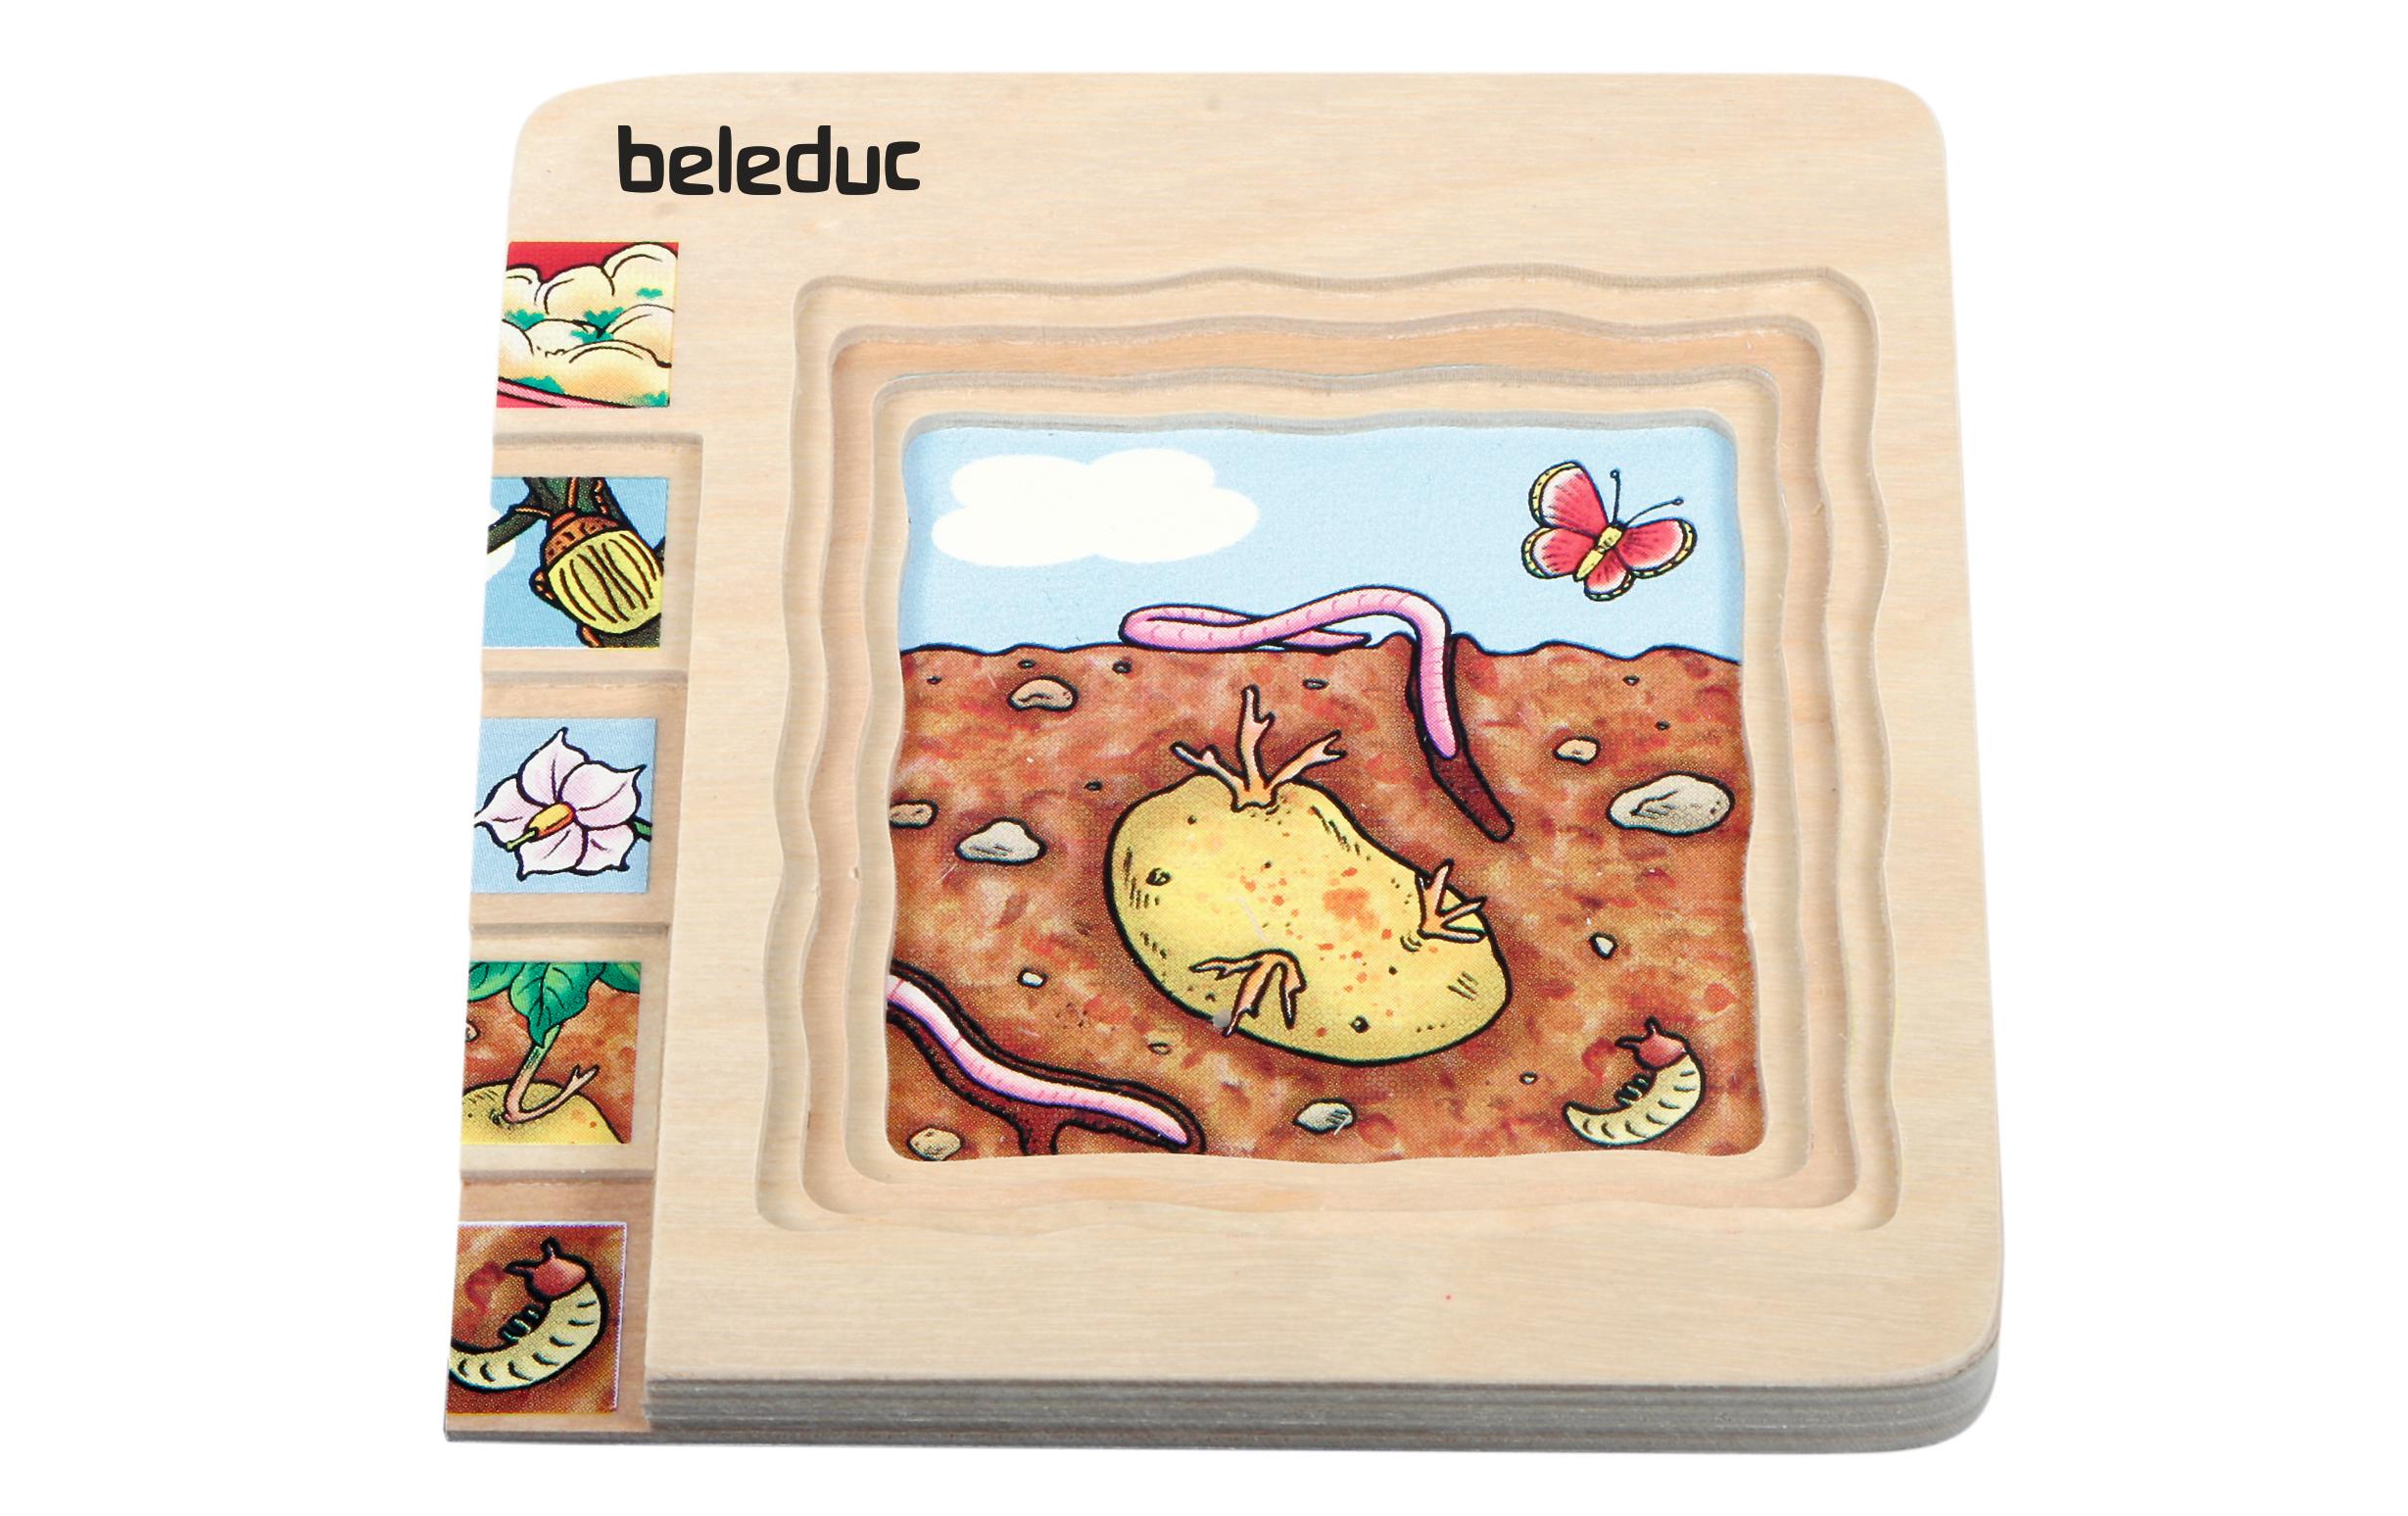 Beleduc Lagen-Puzzle Kartoffel / Karotte 2er-Pack